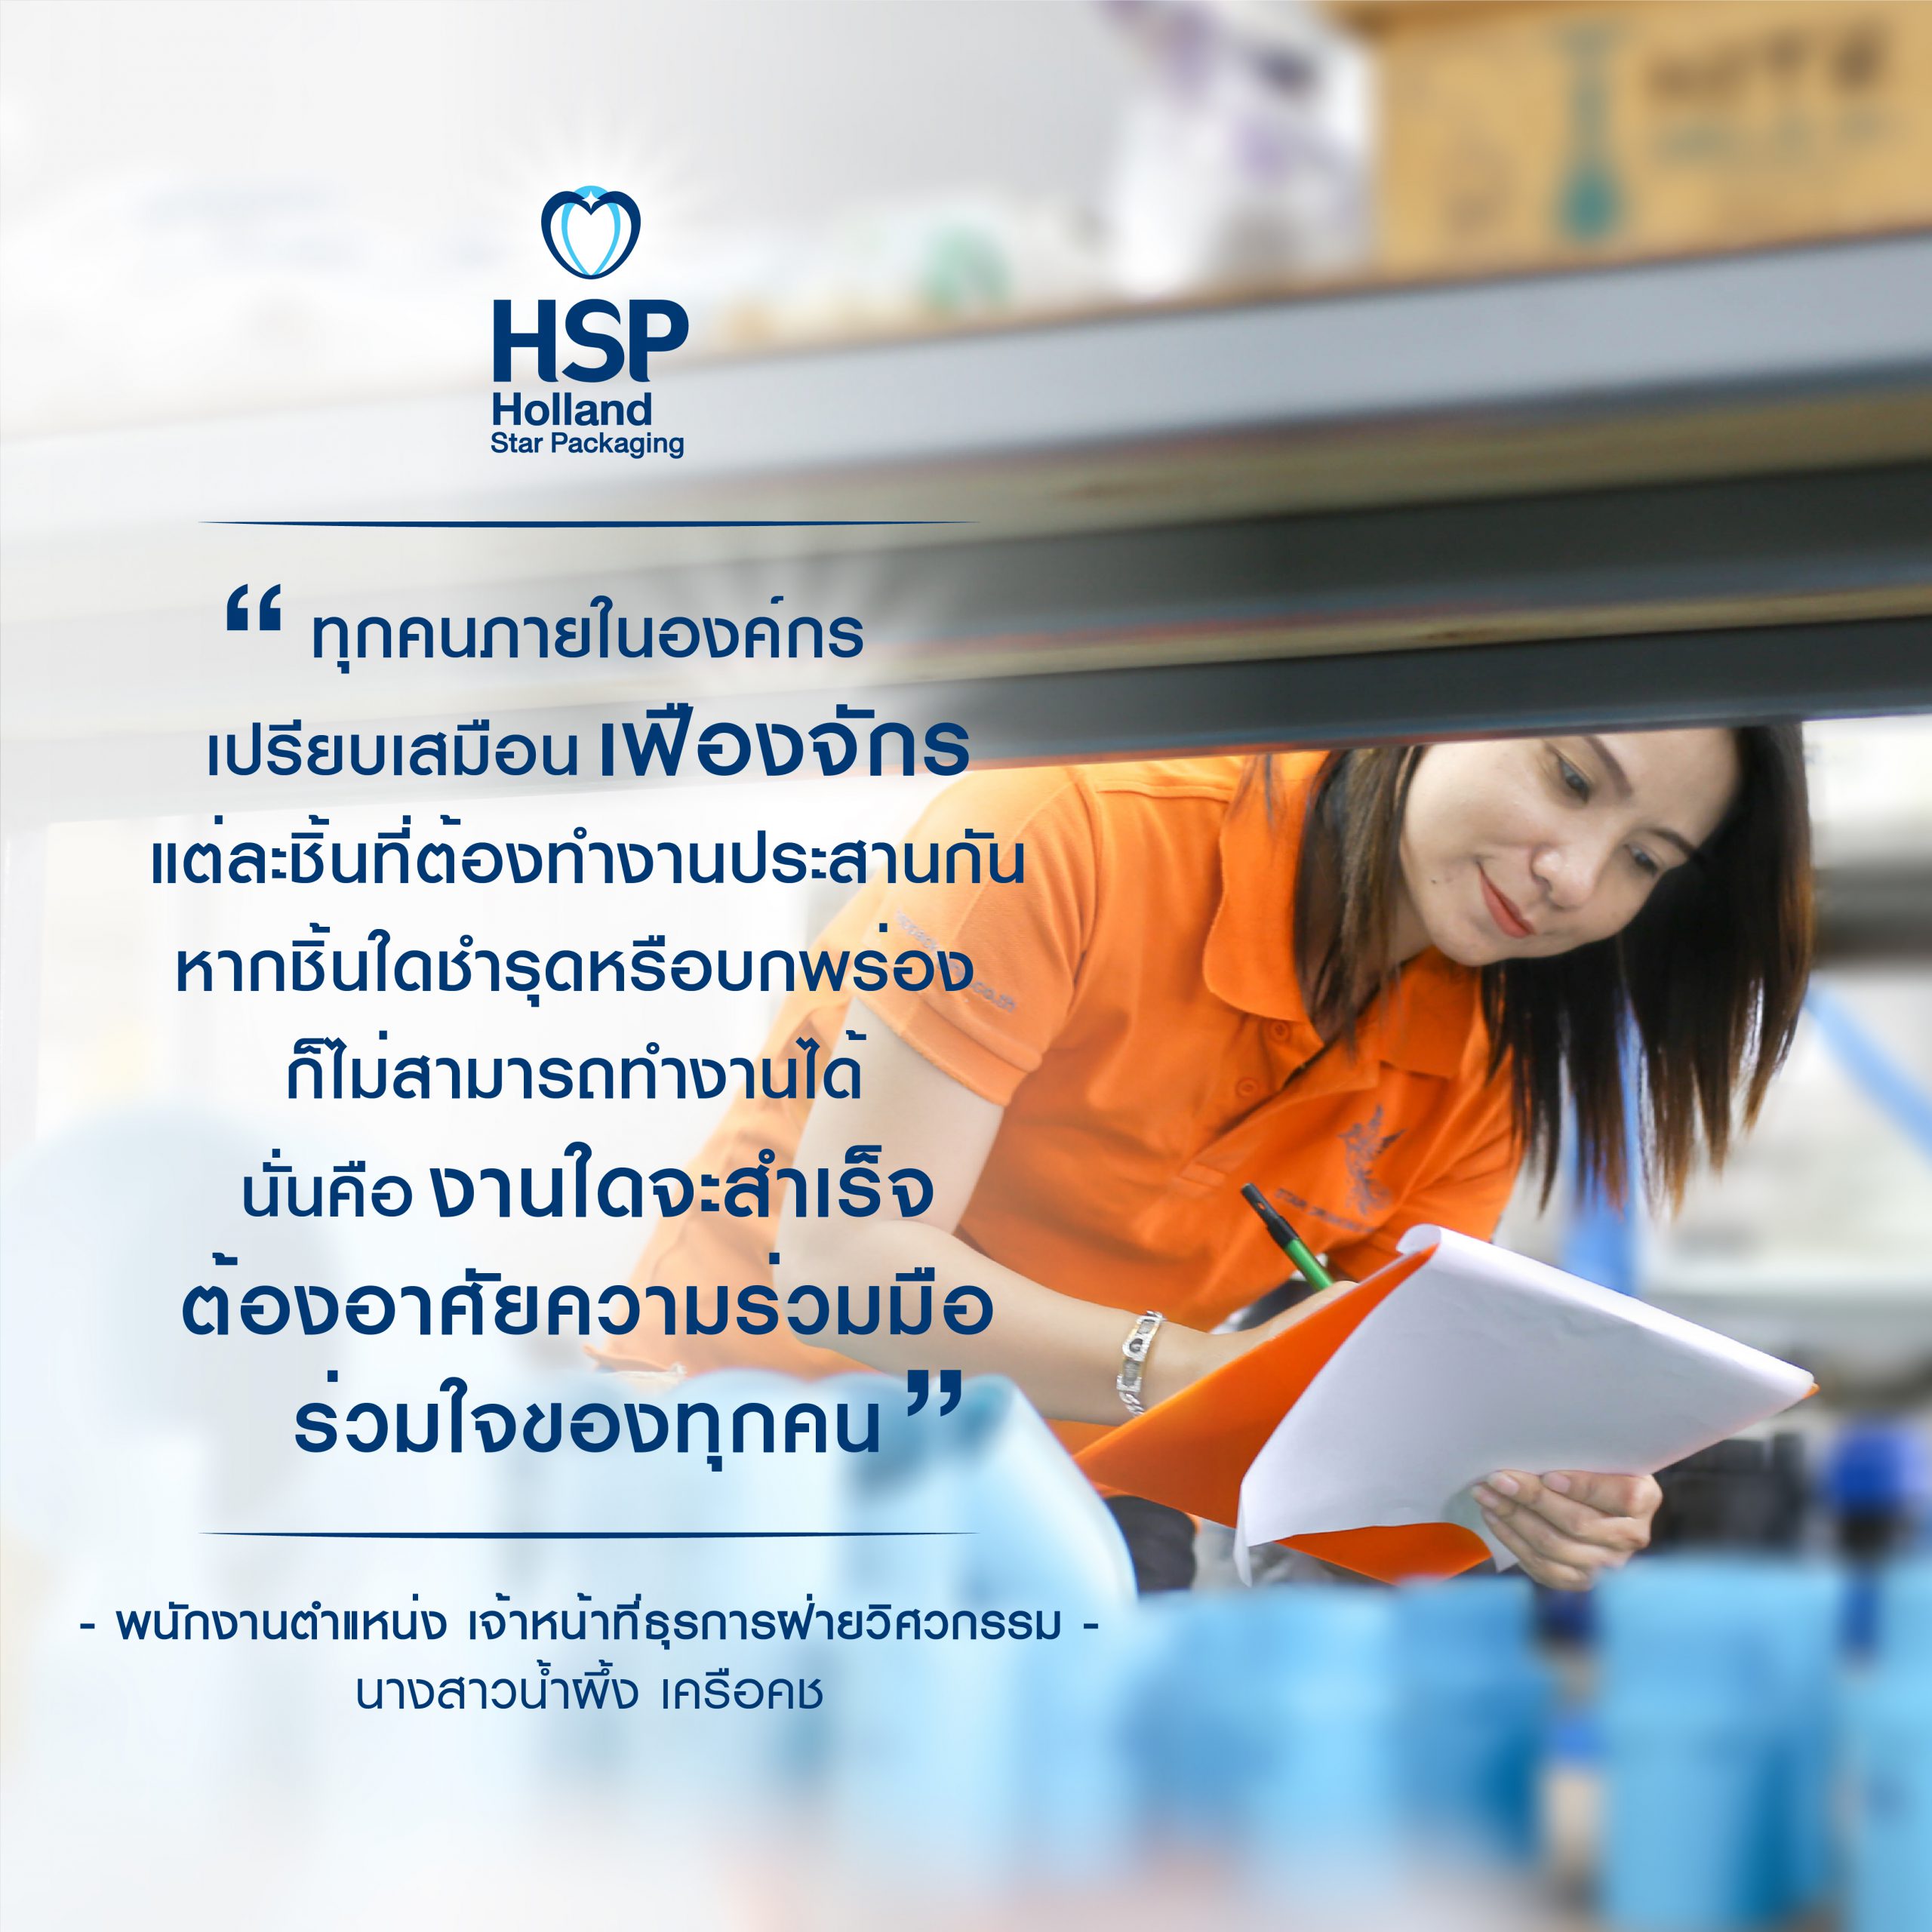 hsp-motto-31-hsppackaging-oem-water